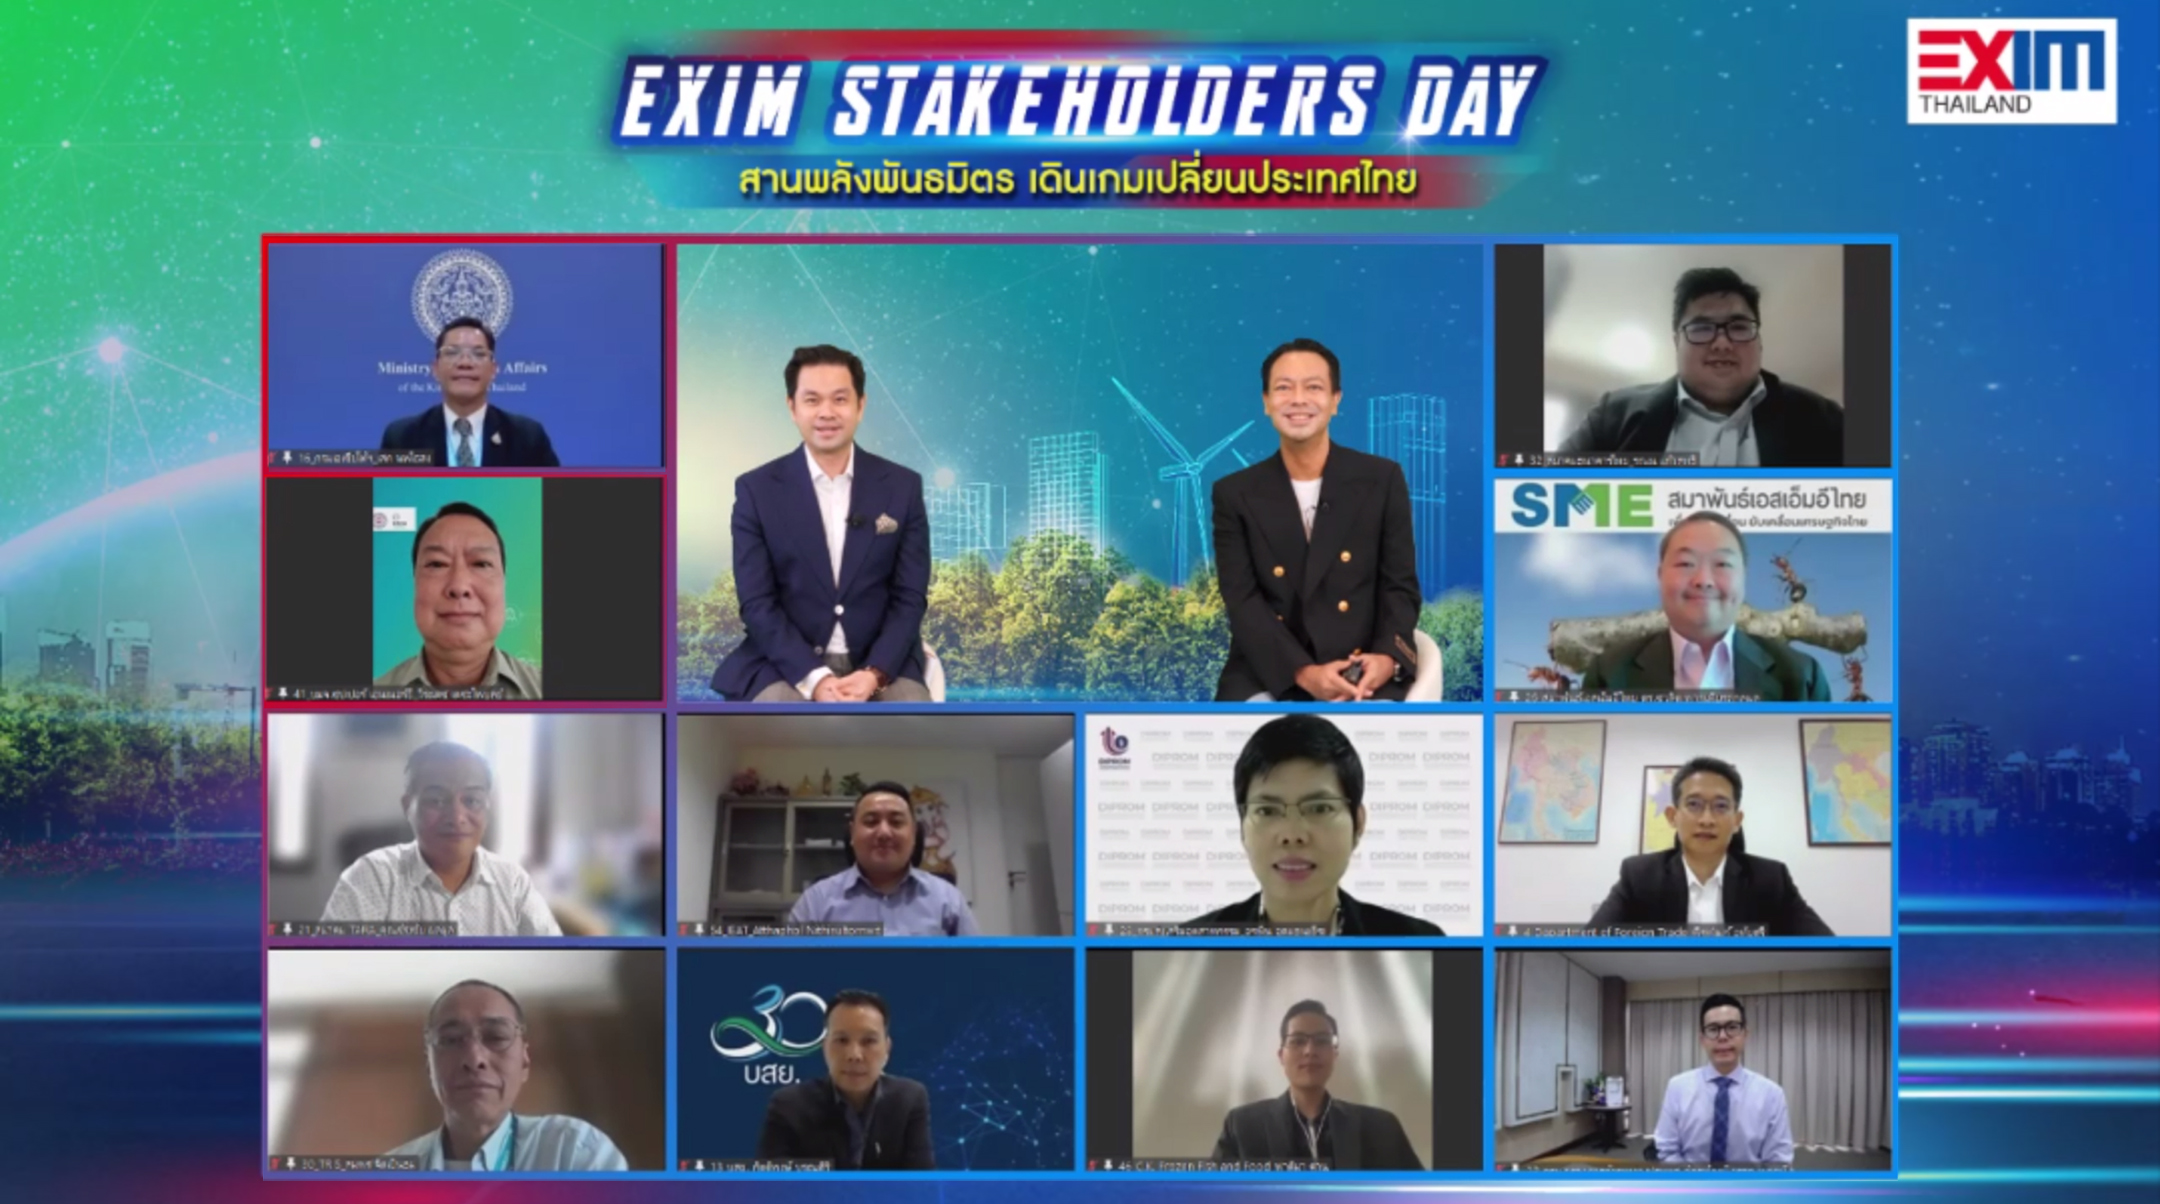 EXIM Stakeholders Day “สานพลังพันธมิตร เดินเกมเปลี่ยนประเทศไทย”